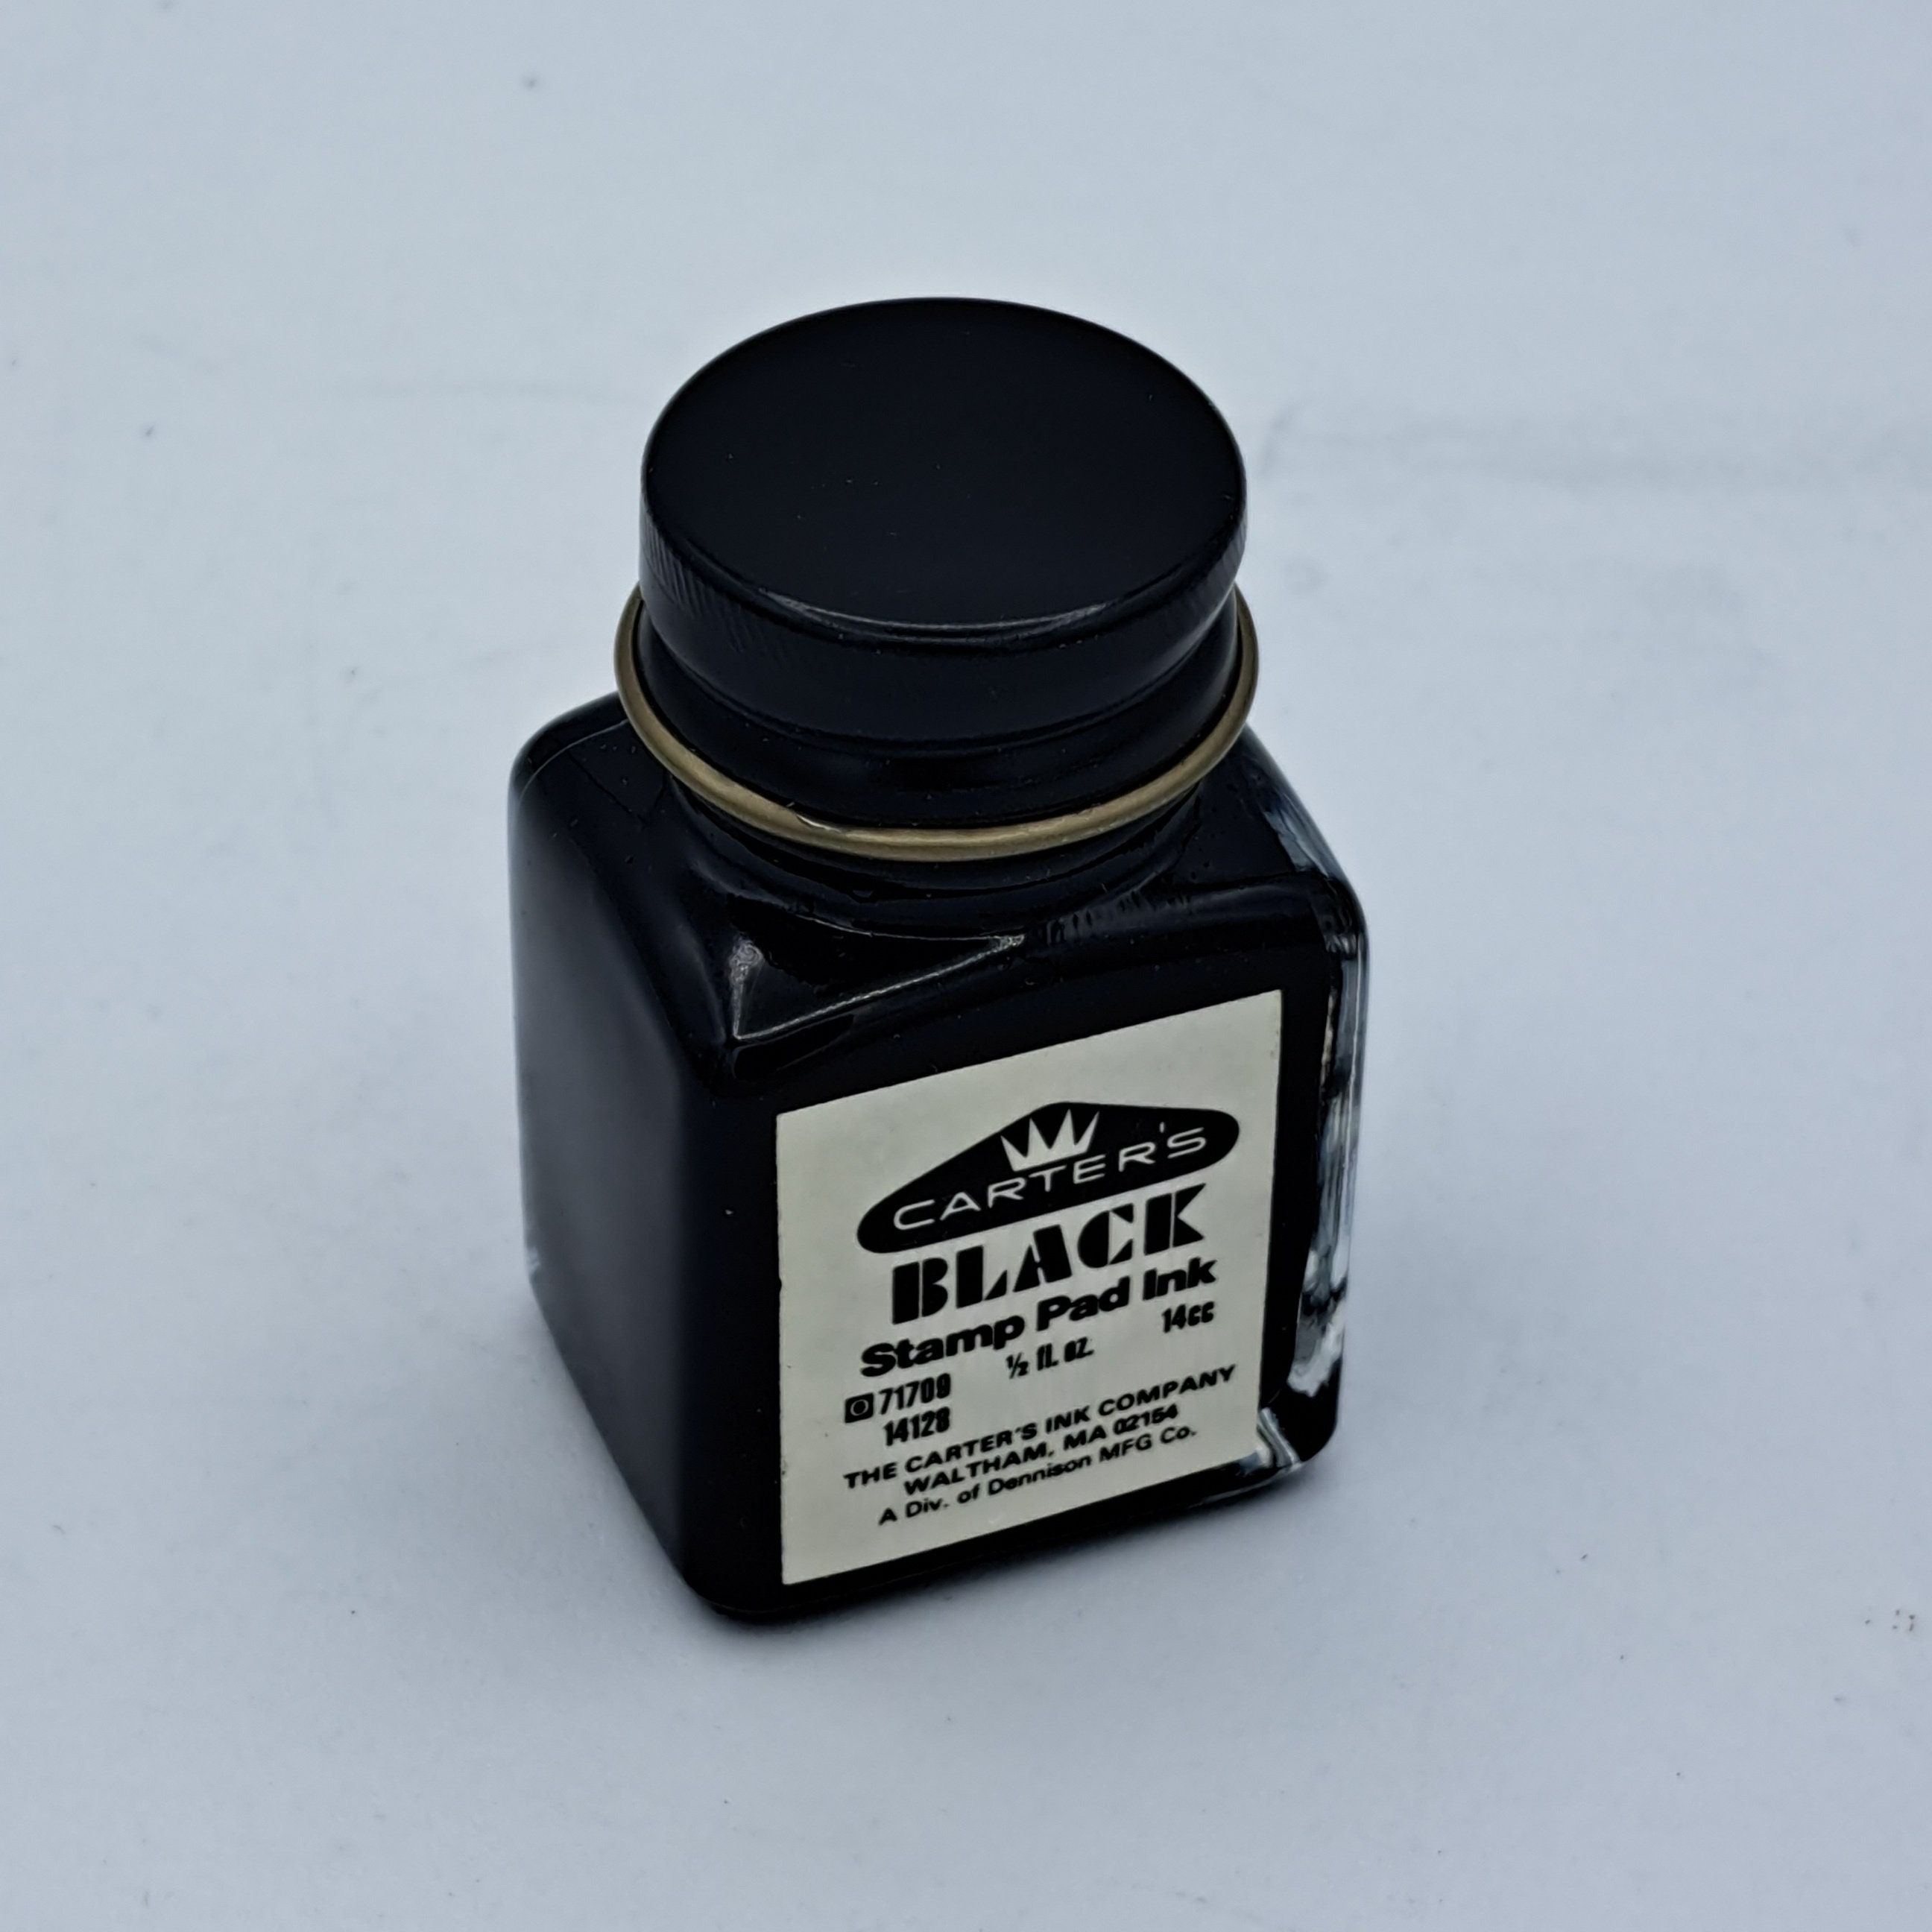 Carter's Black Stamp Pad Ink Small Vintage Glass Bottle 